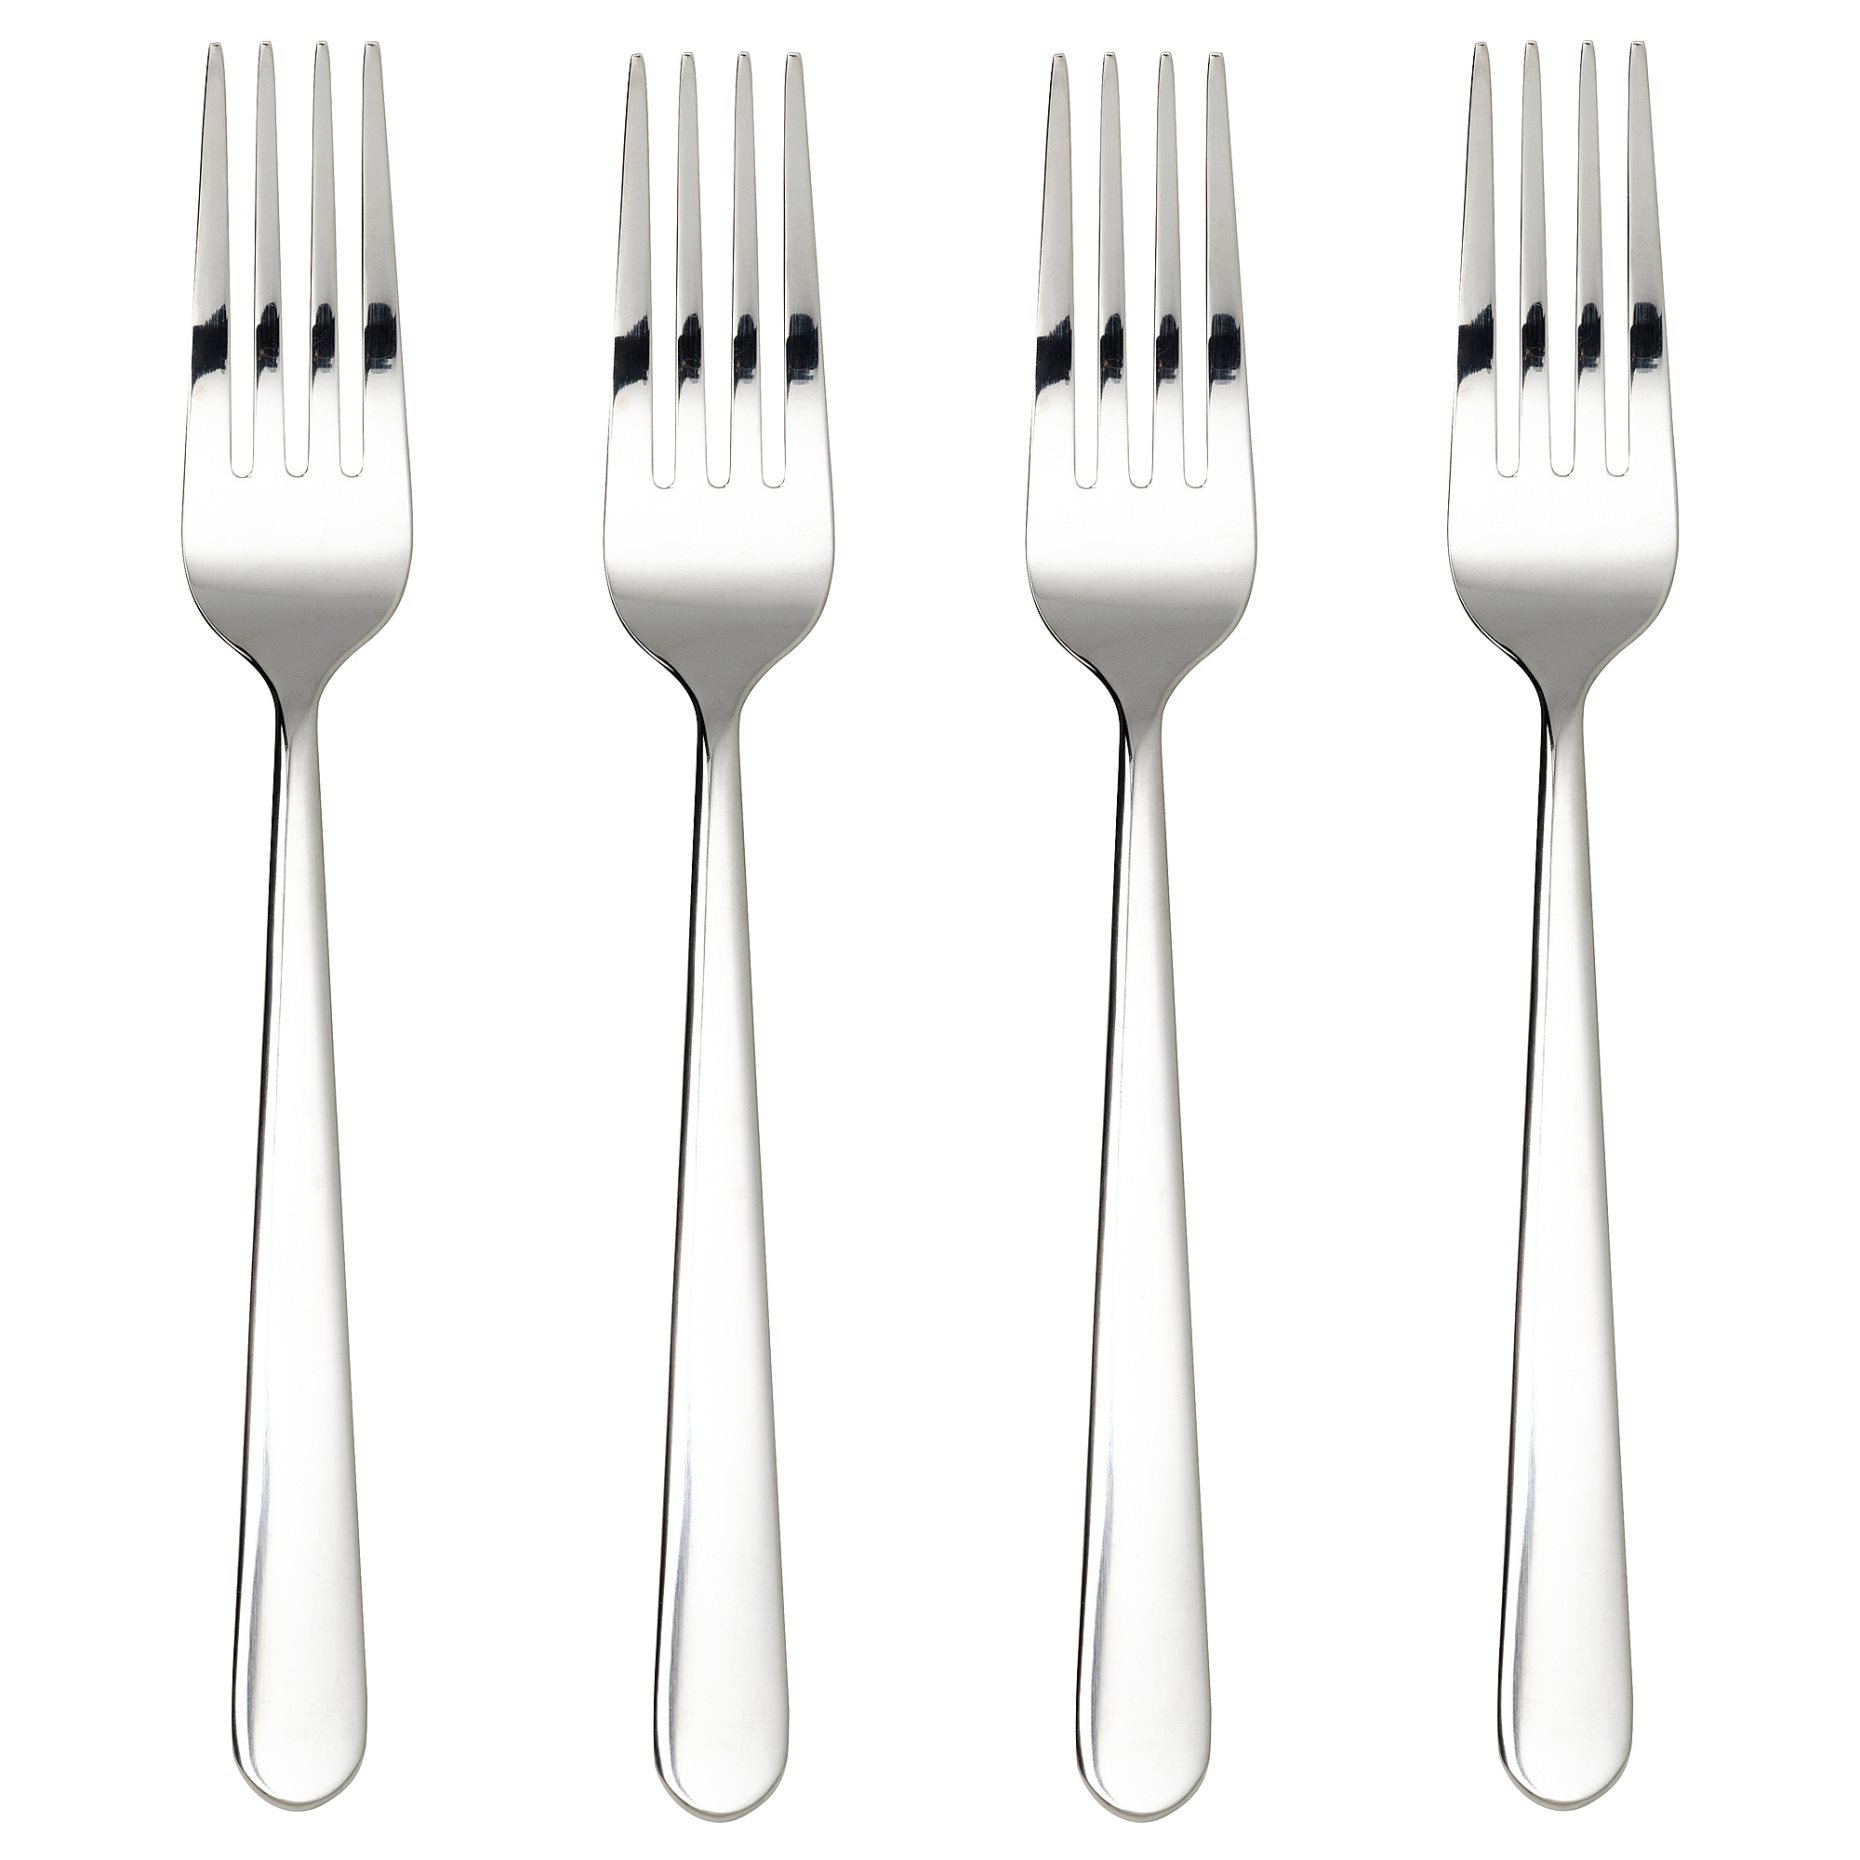 MARTORP, fork 4 pack, 19 cm, 705.210.30